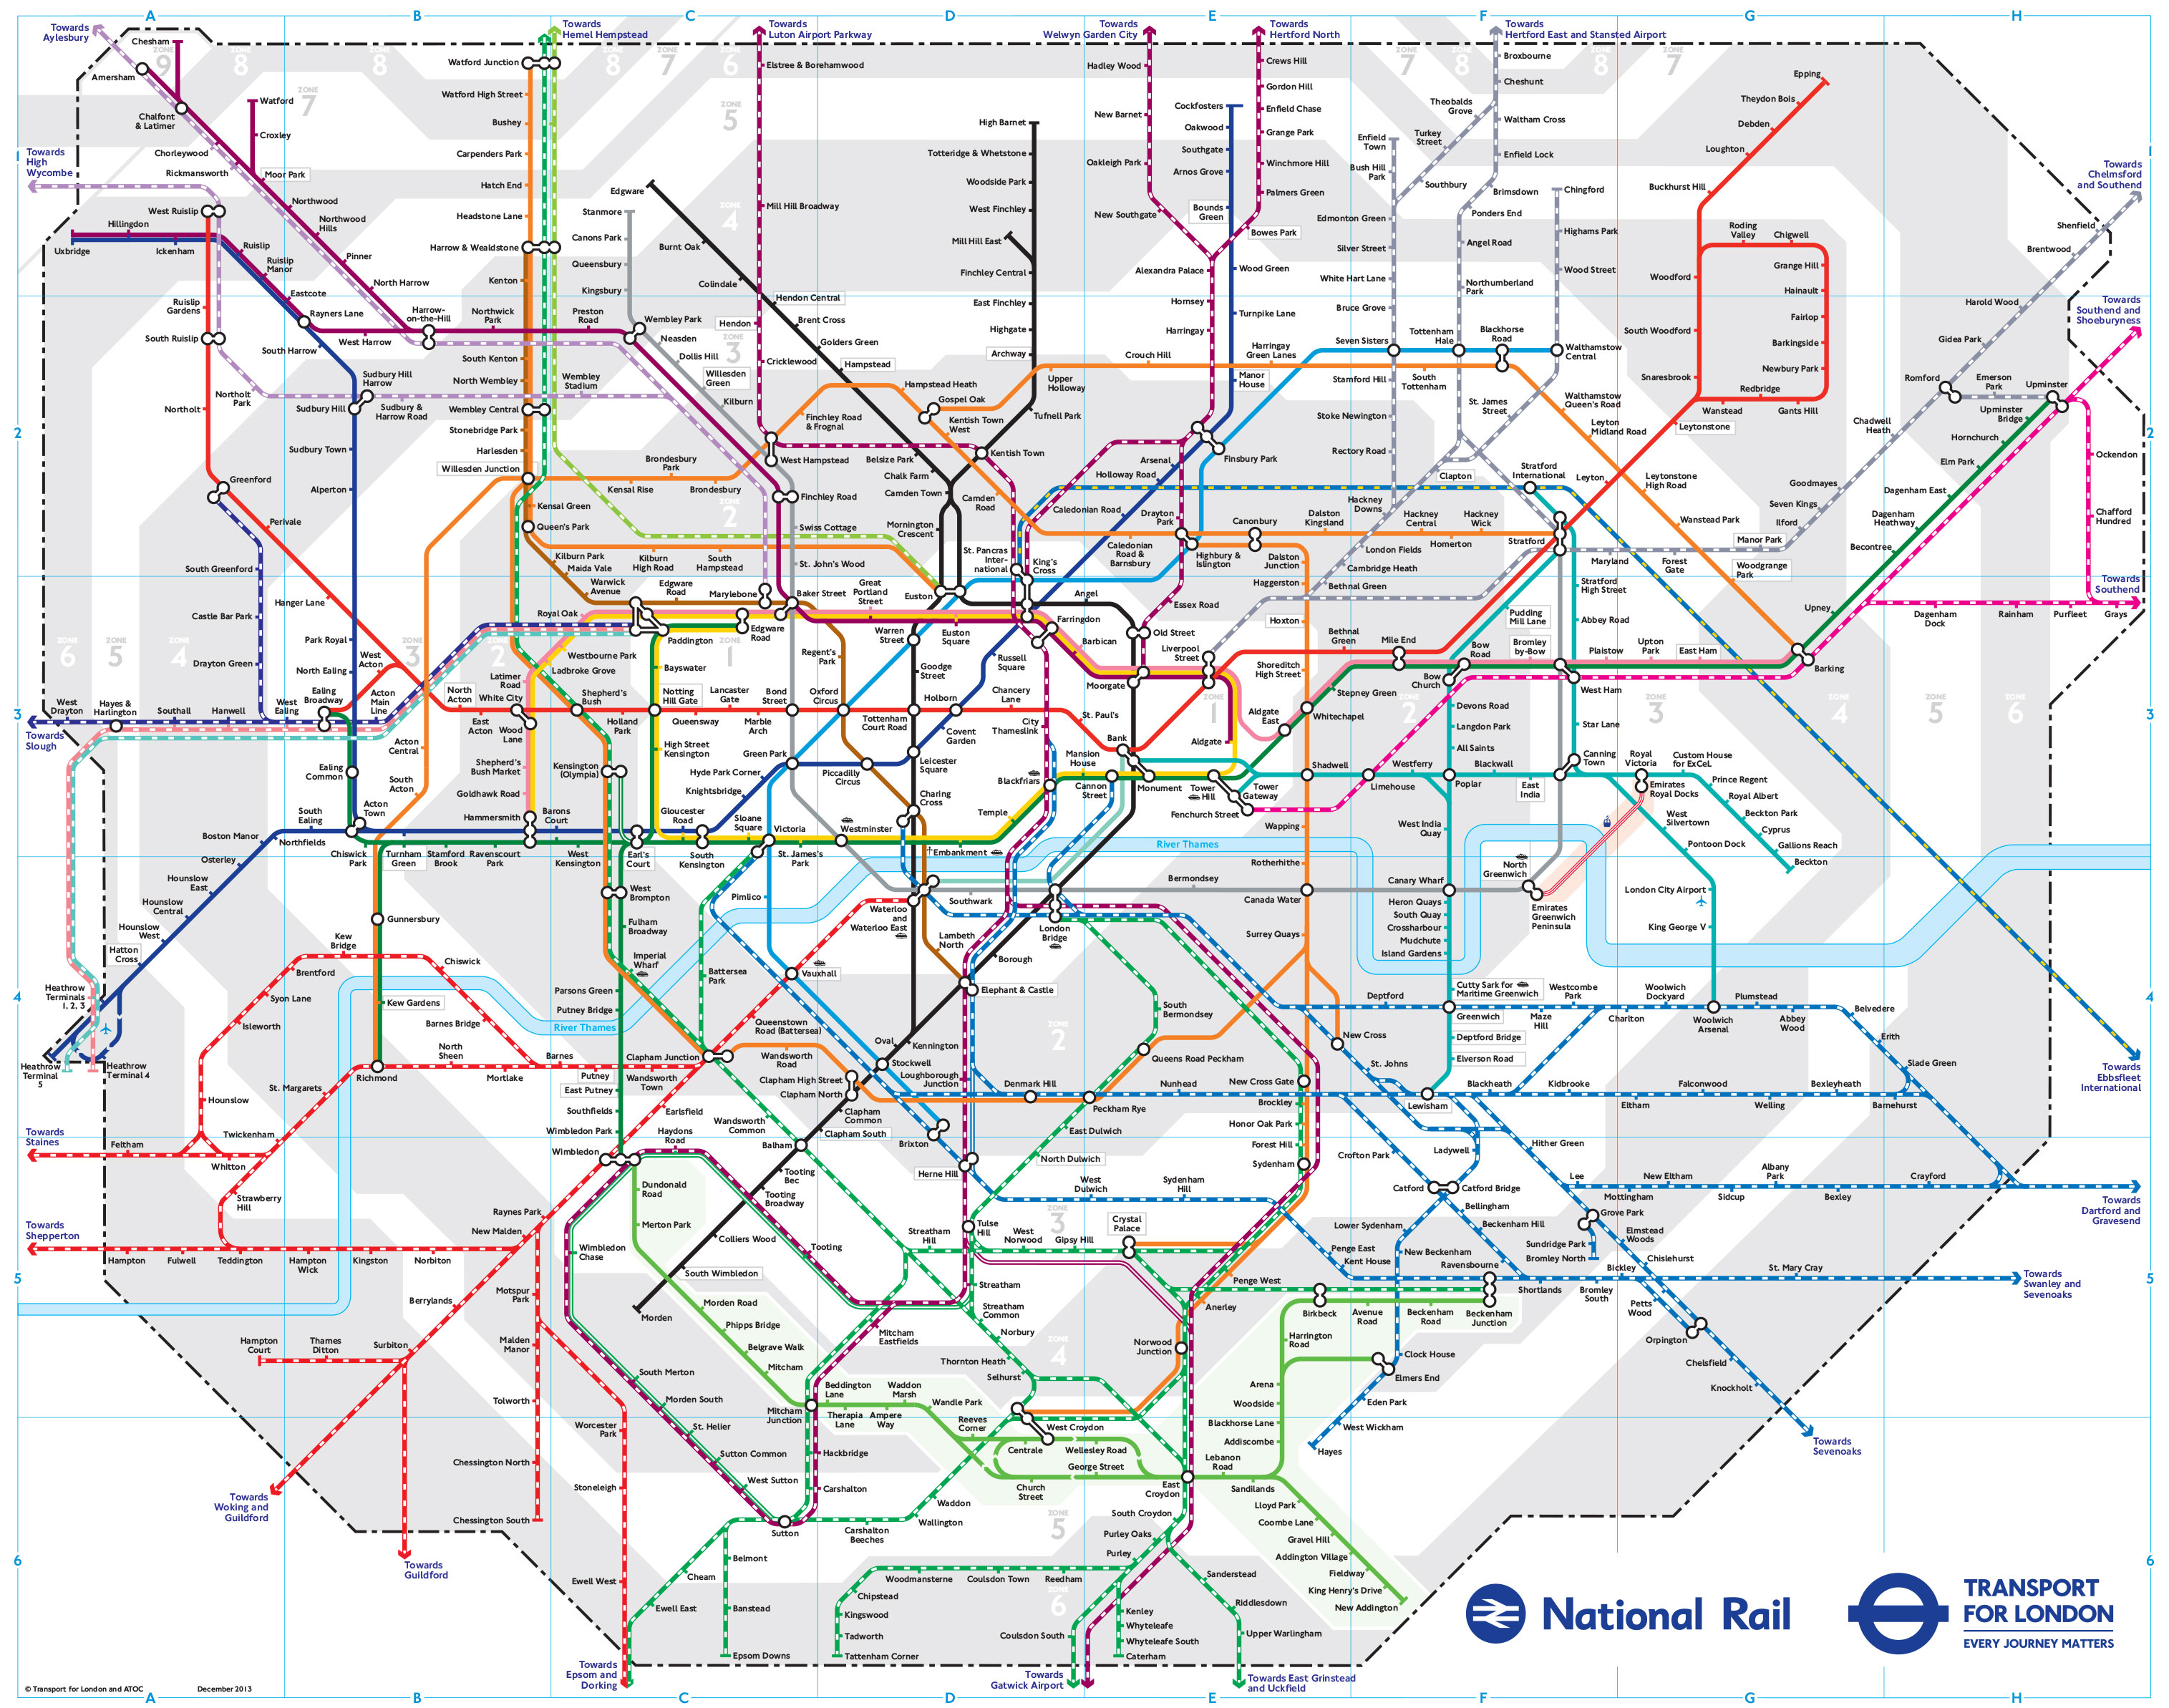 S bahn netzplan und karte von London stationen und linien